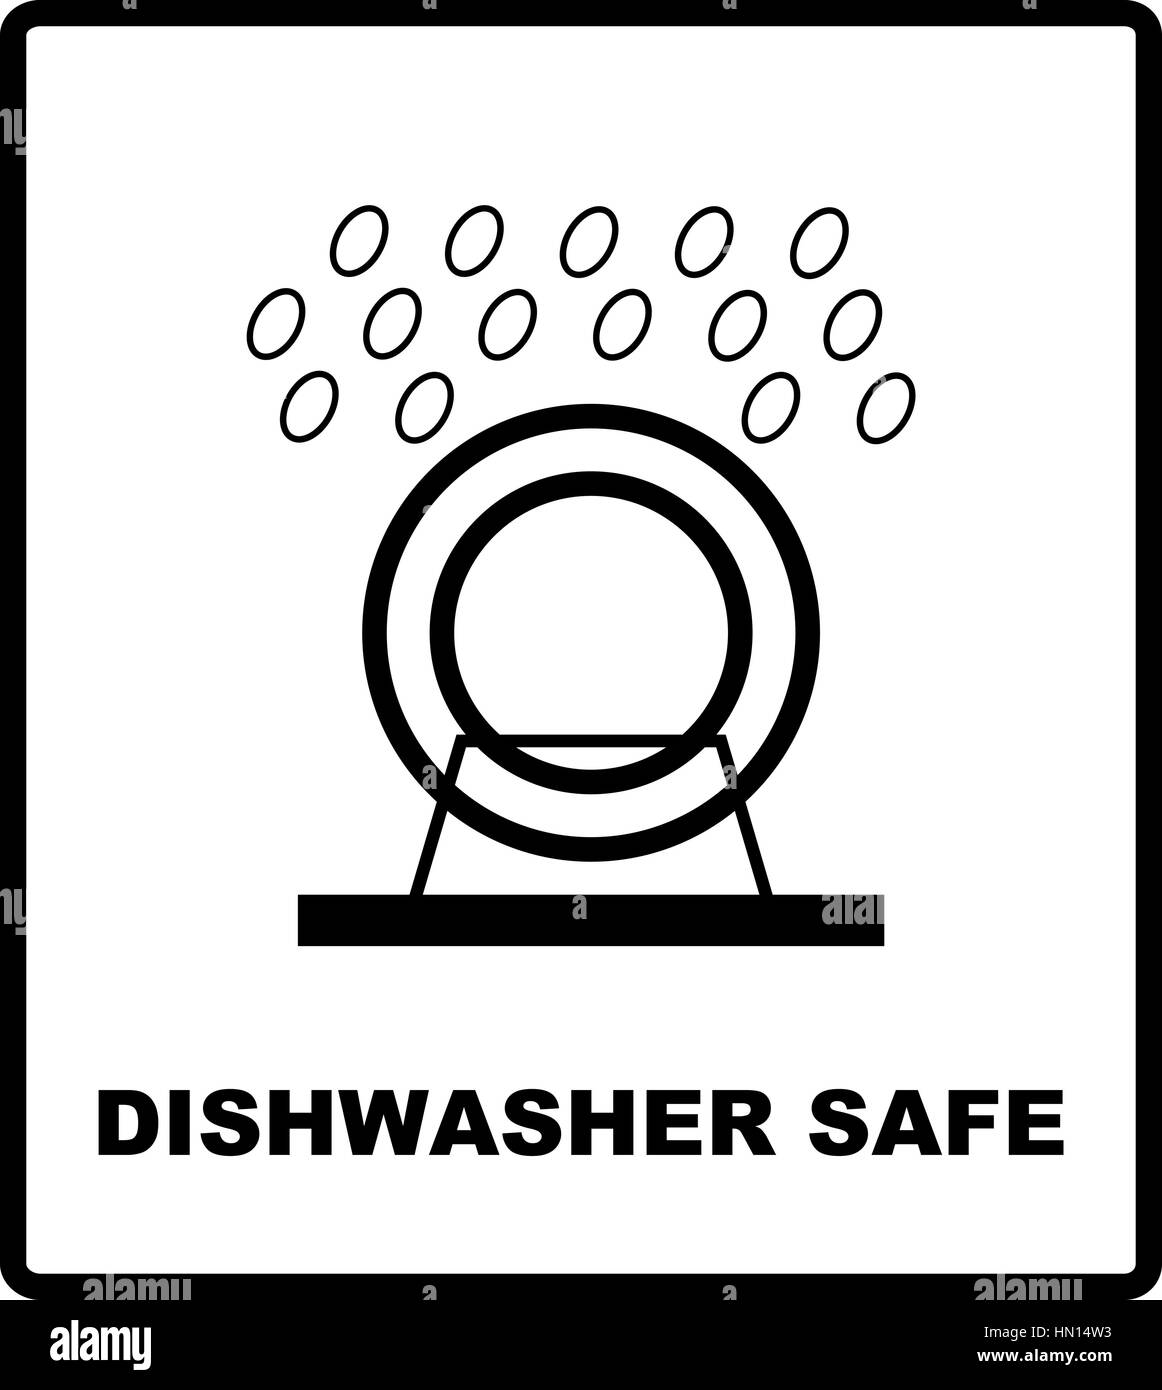 Значок можно мыть в посудомоечной. Знаки на посудомоечной машине. Пиктограмма посудомоечная машина. Значок Dishwasher safe. Векторное изображение посудомоечная машина.